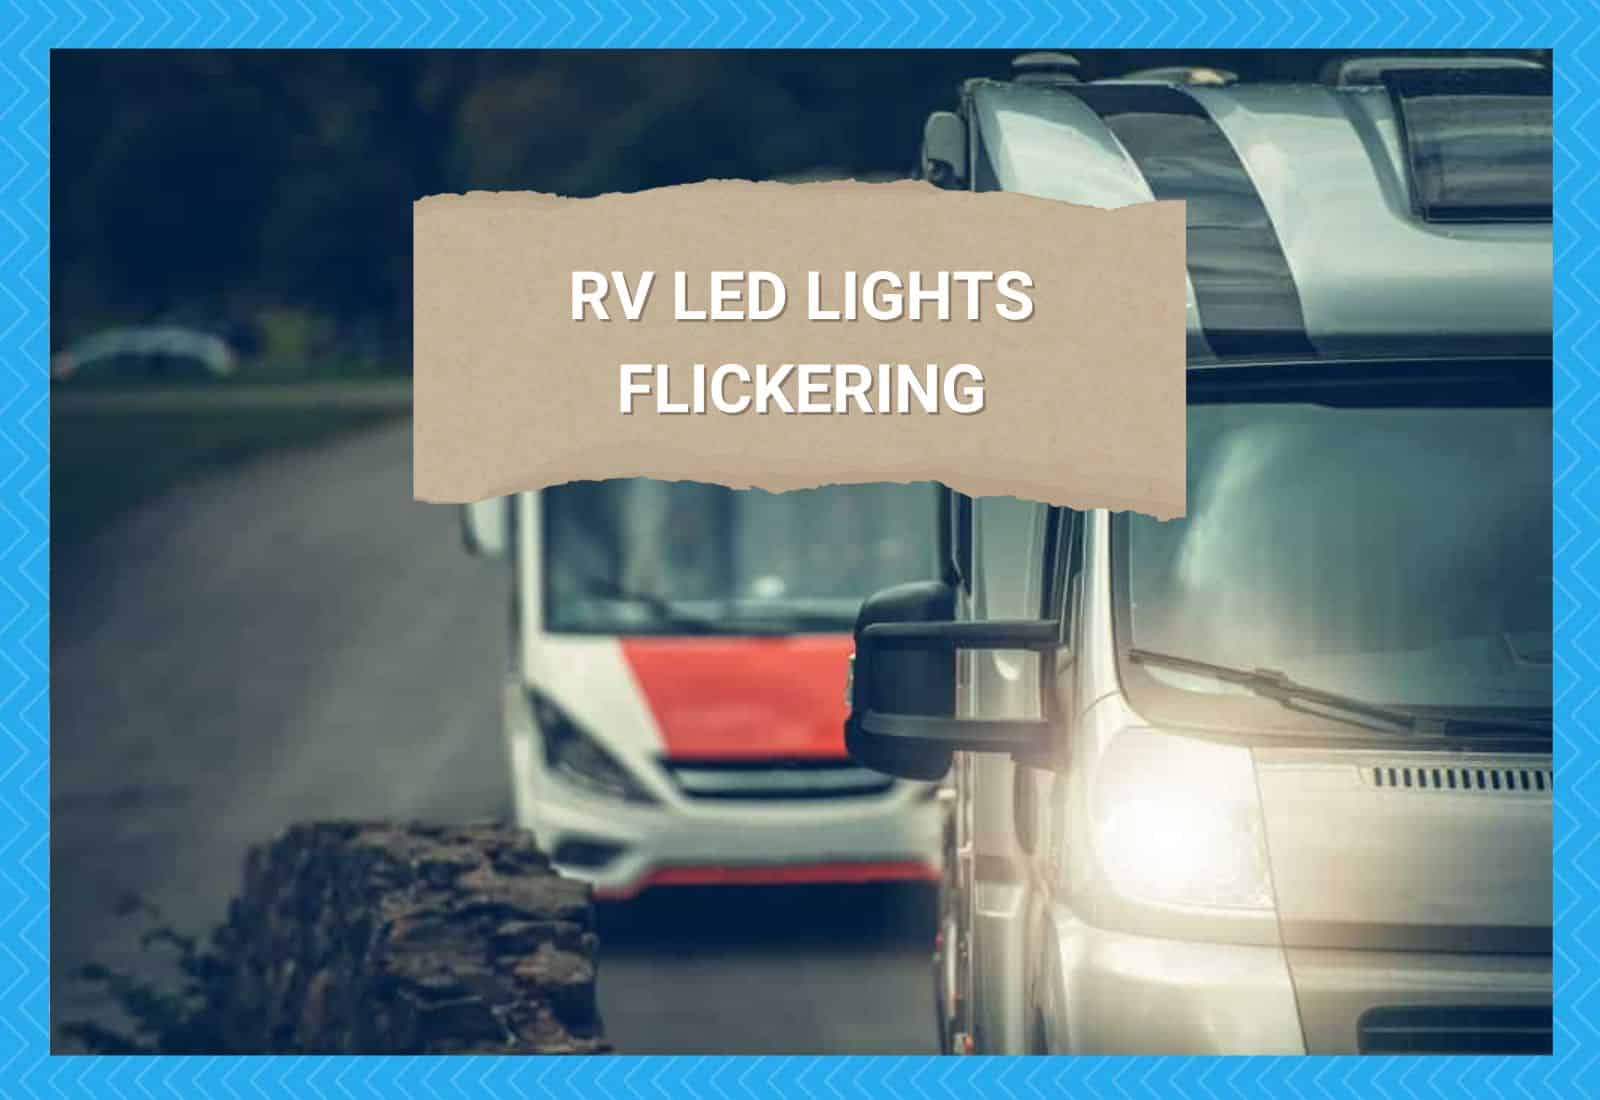 RV LED Lights Flickering